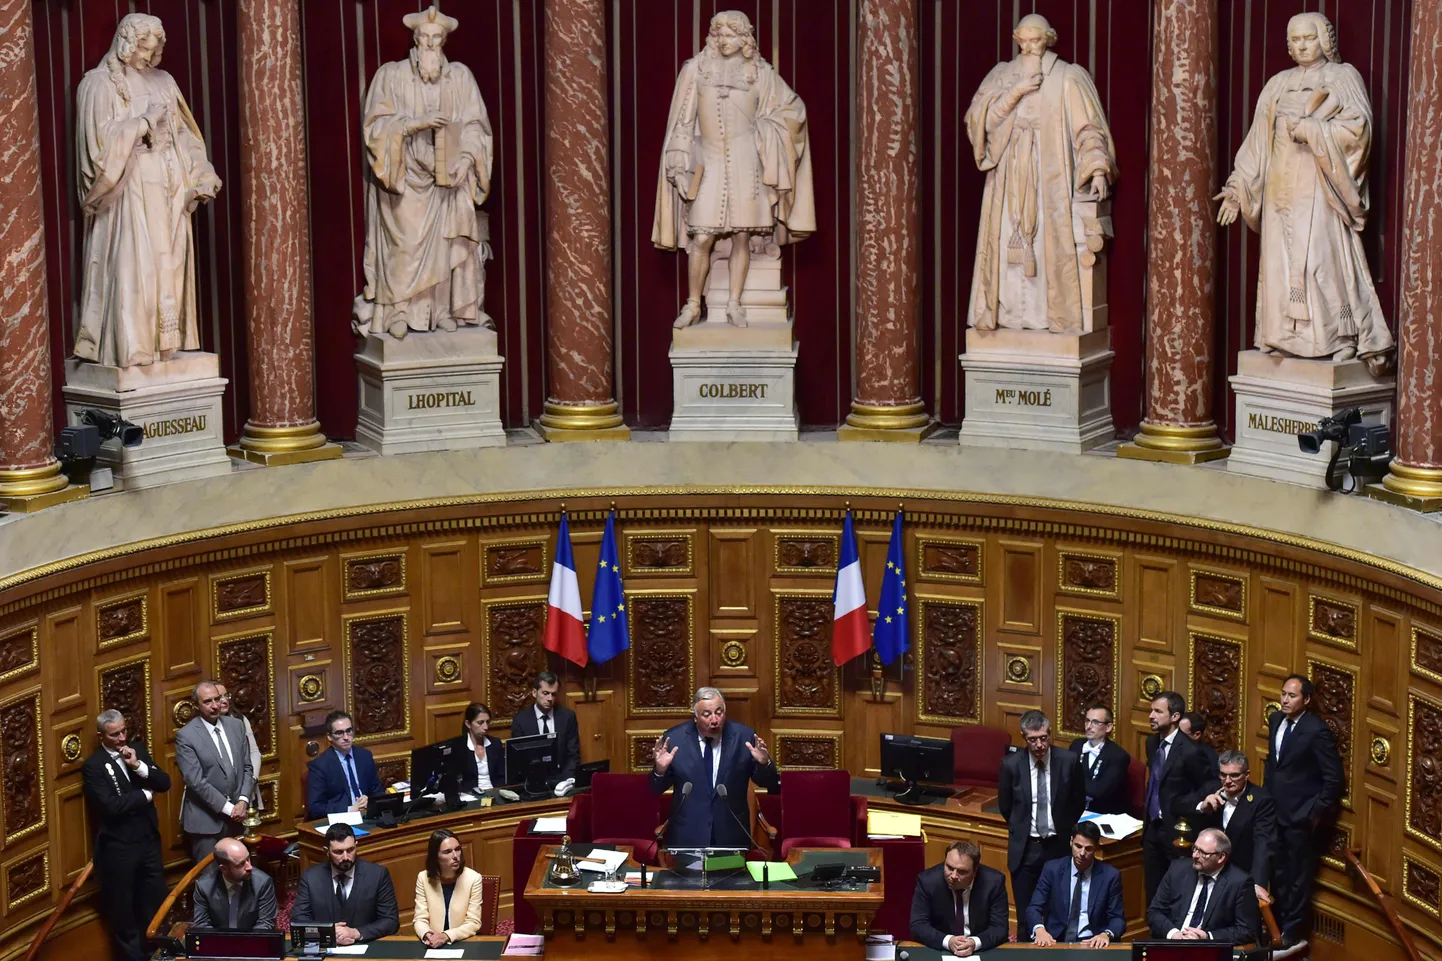 Prantsuse senati istugisaal.